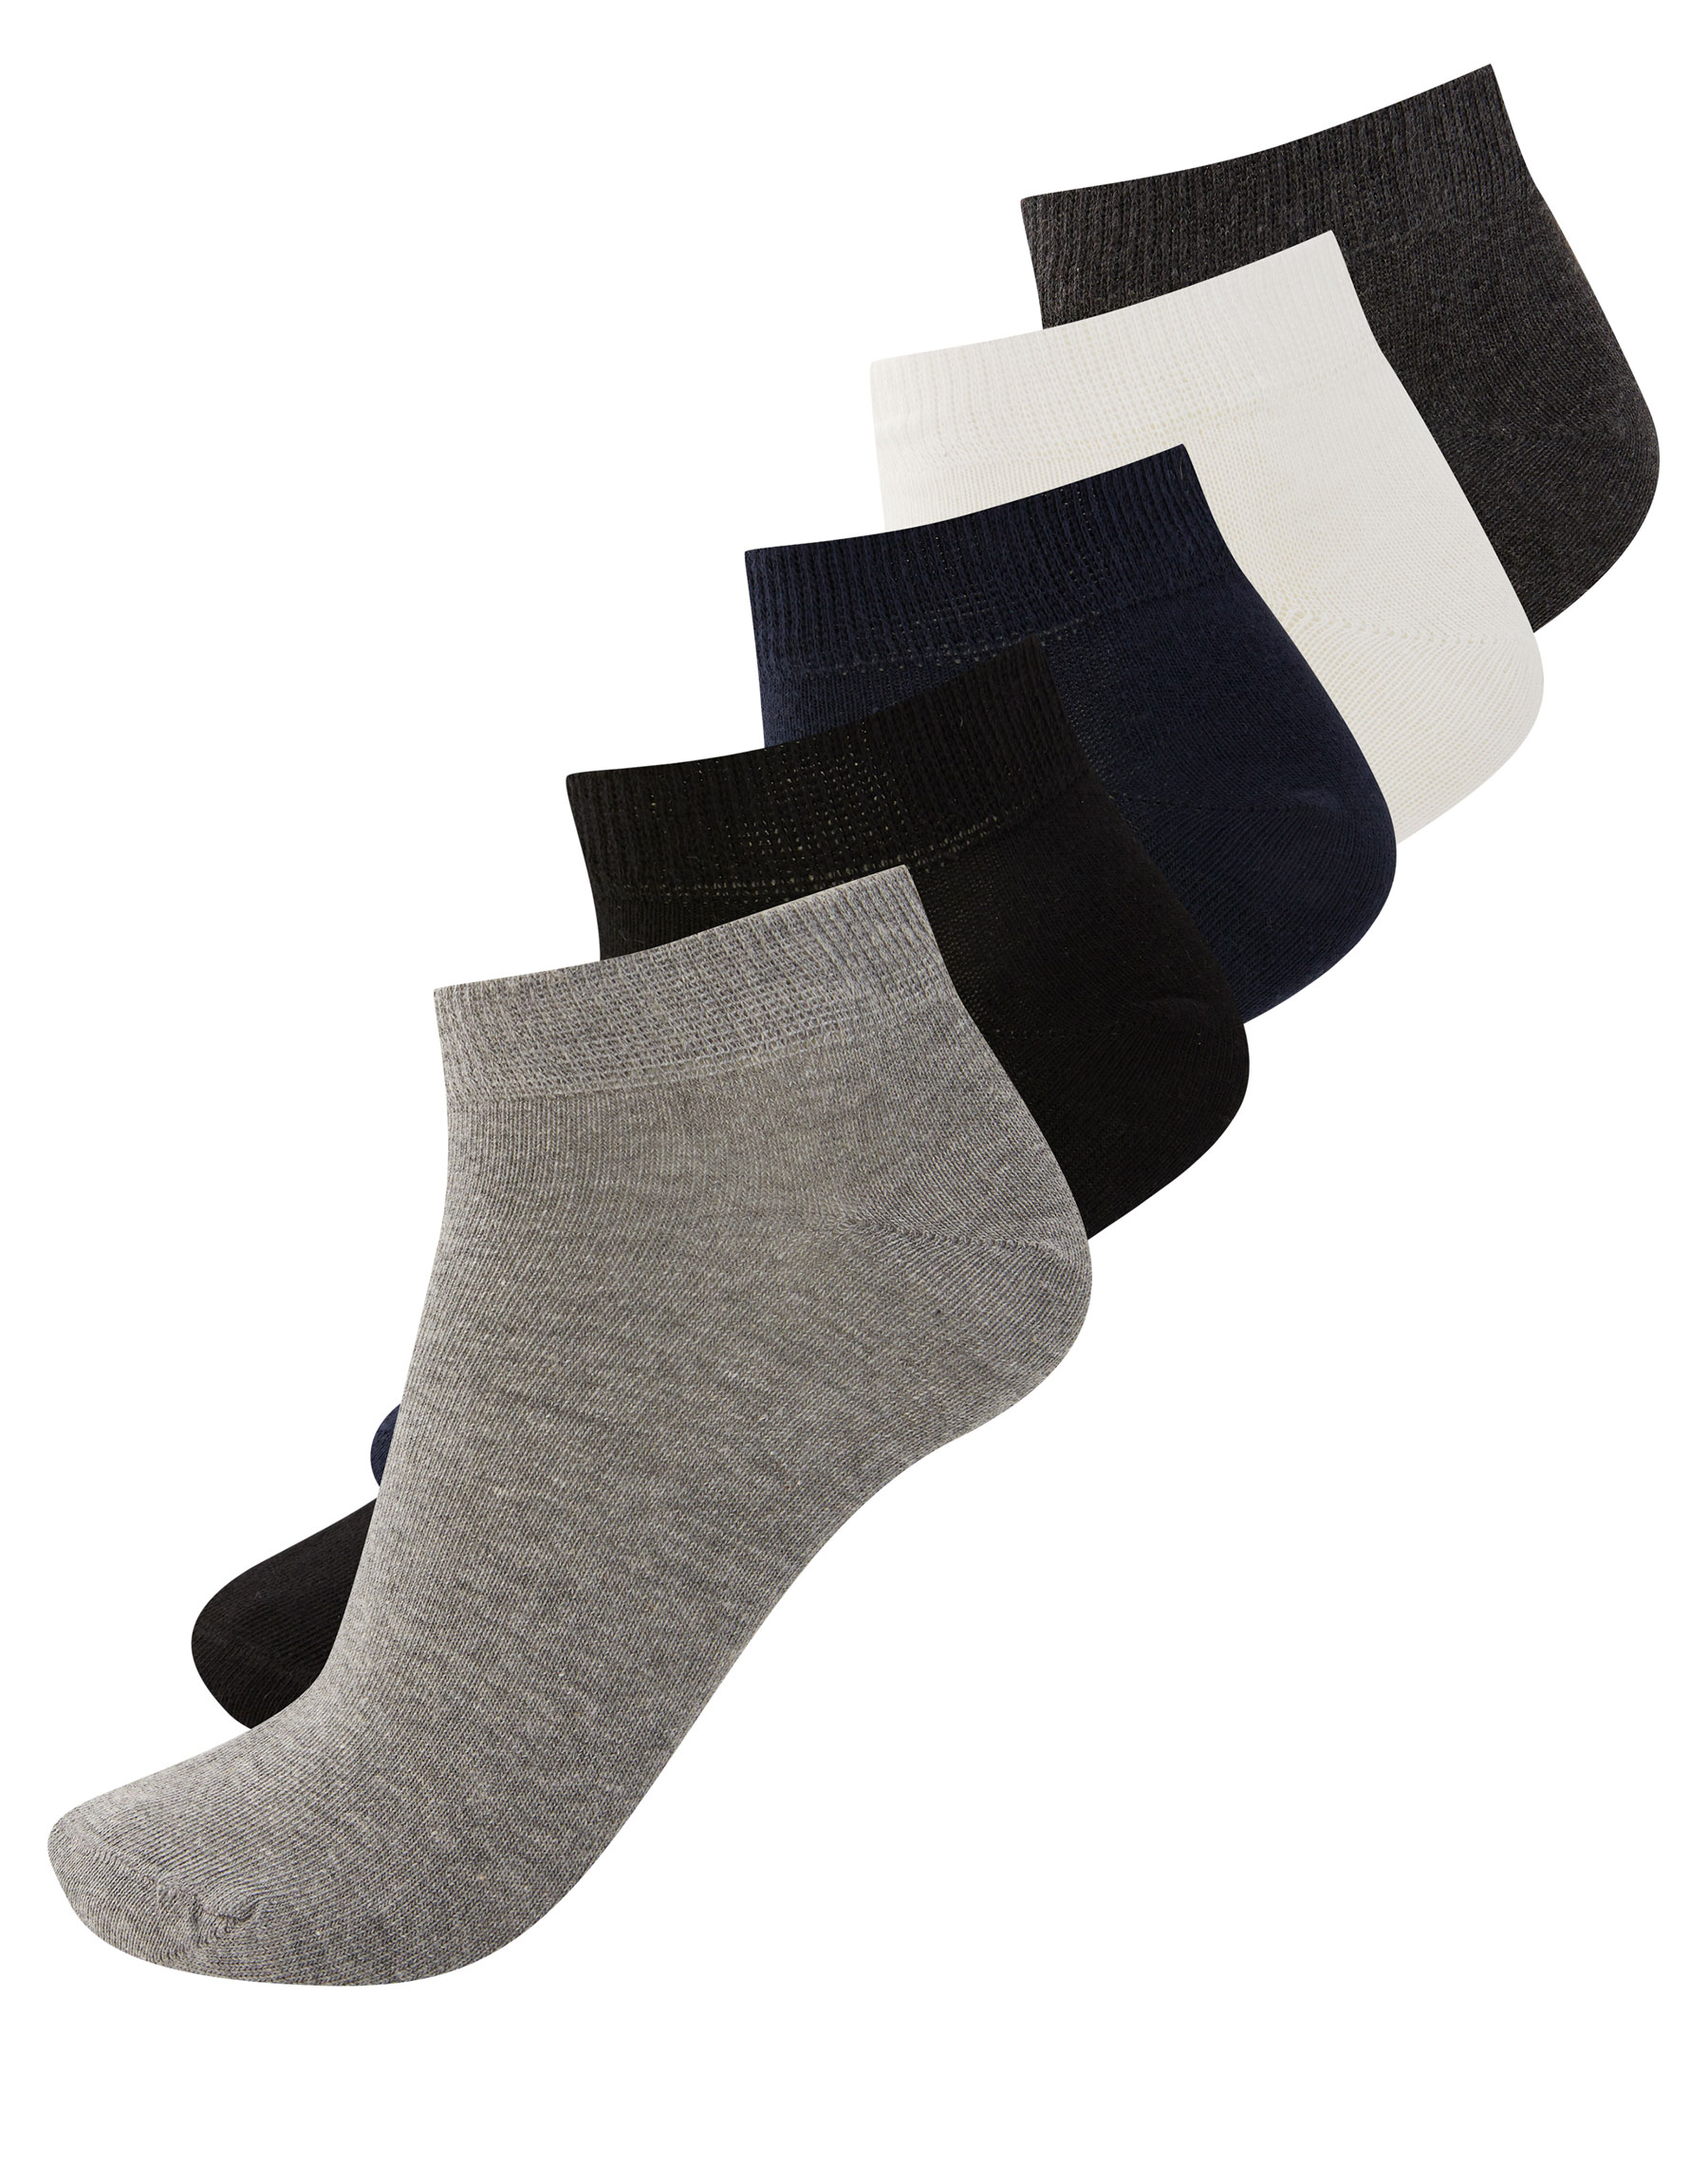 Набор из 5 пар коротких носков разных цветов РАЗНЫЕ Pull & Bear